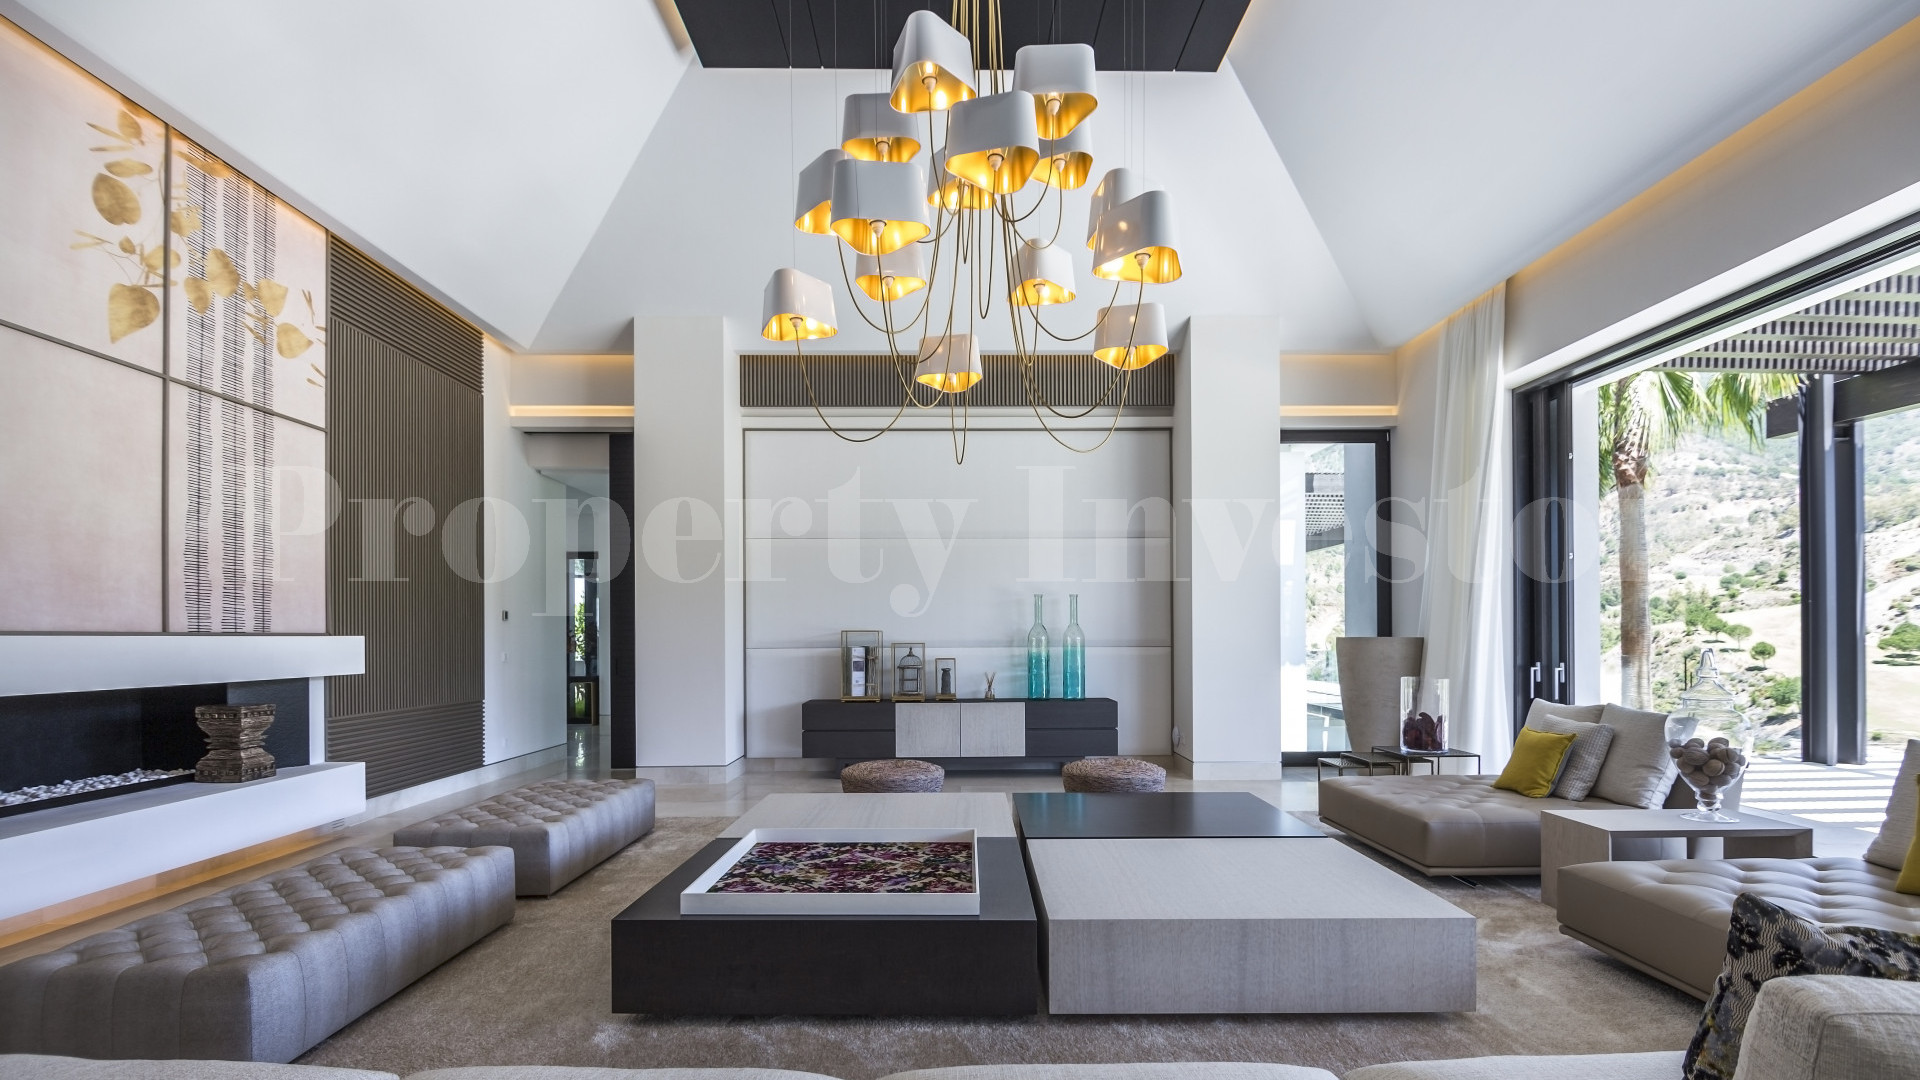 Breathtaking 6 Bedroom Luxury Hillside Villa for Sale in La Zagaleta, Spain